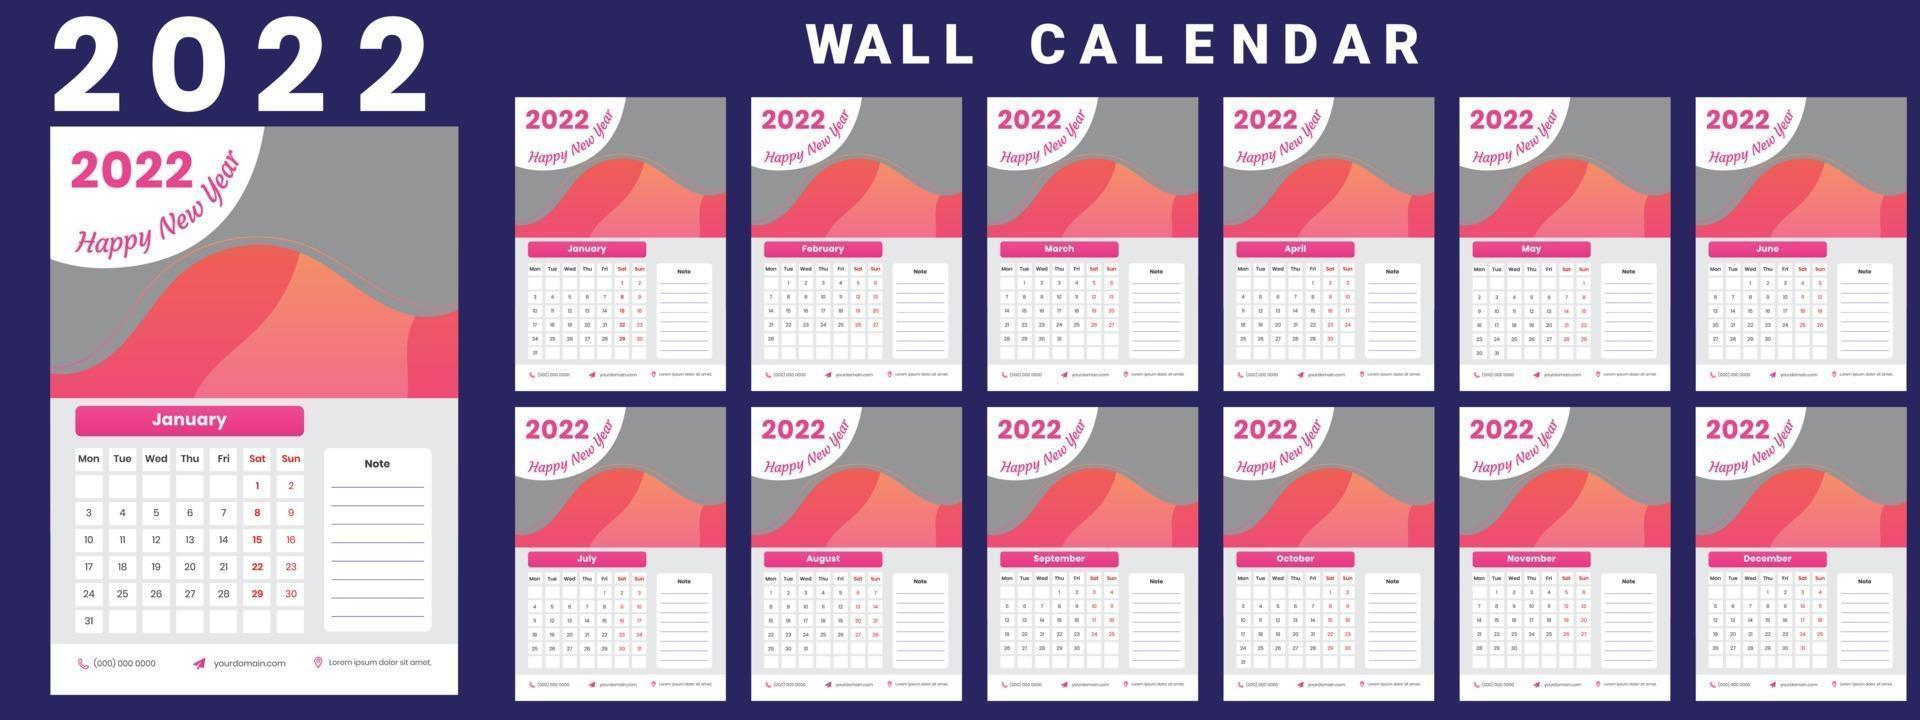 calendario de pared 2022 semana inicio lunes diseño corporativo plantilla vector